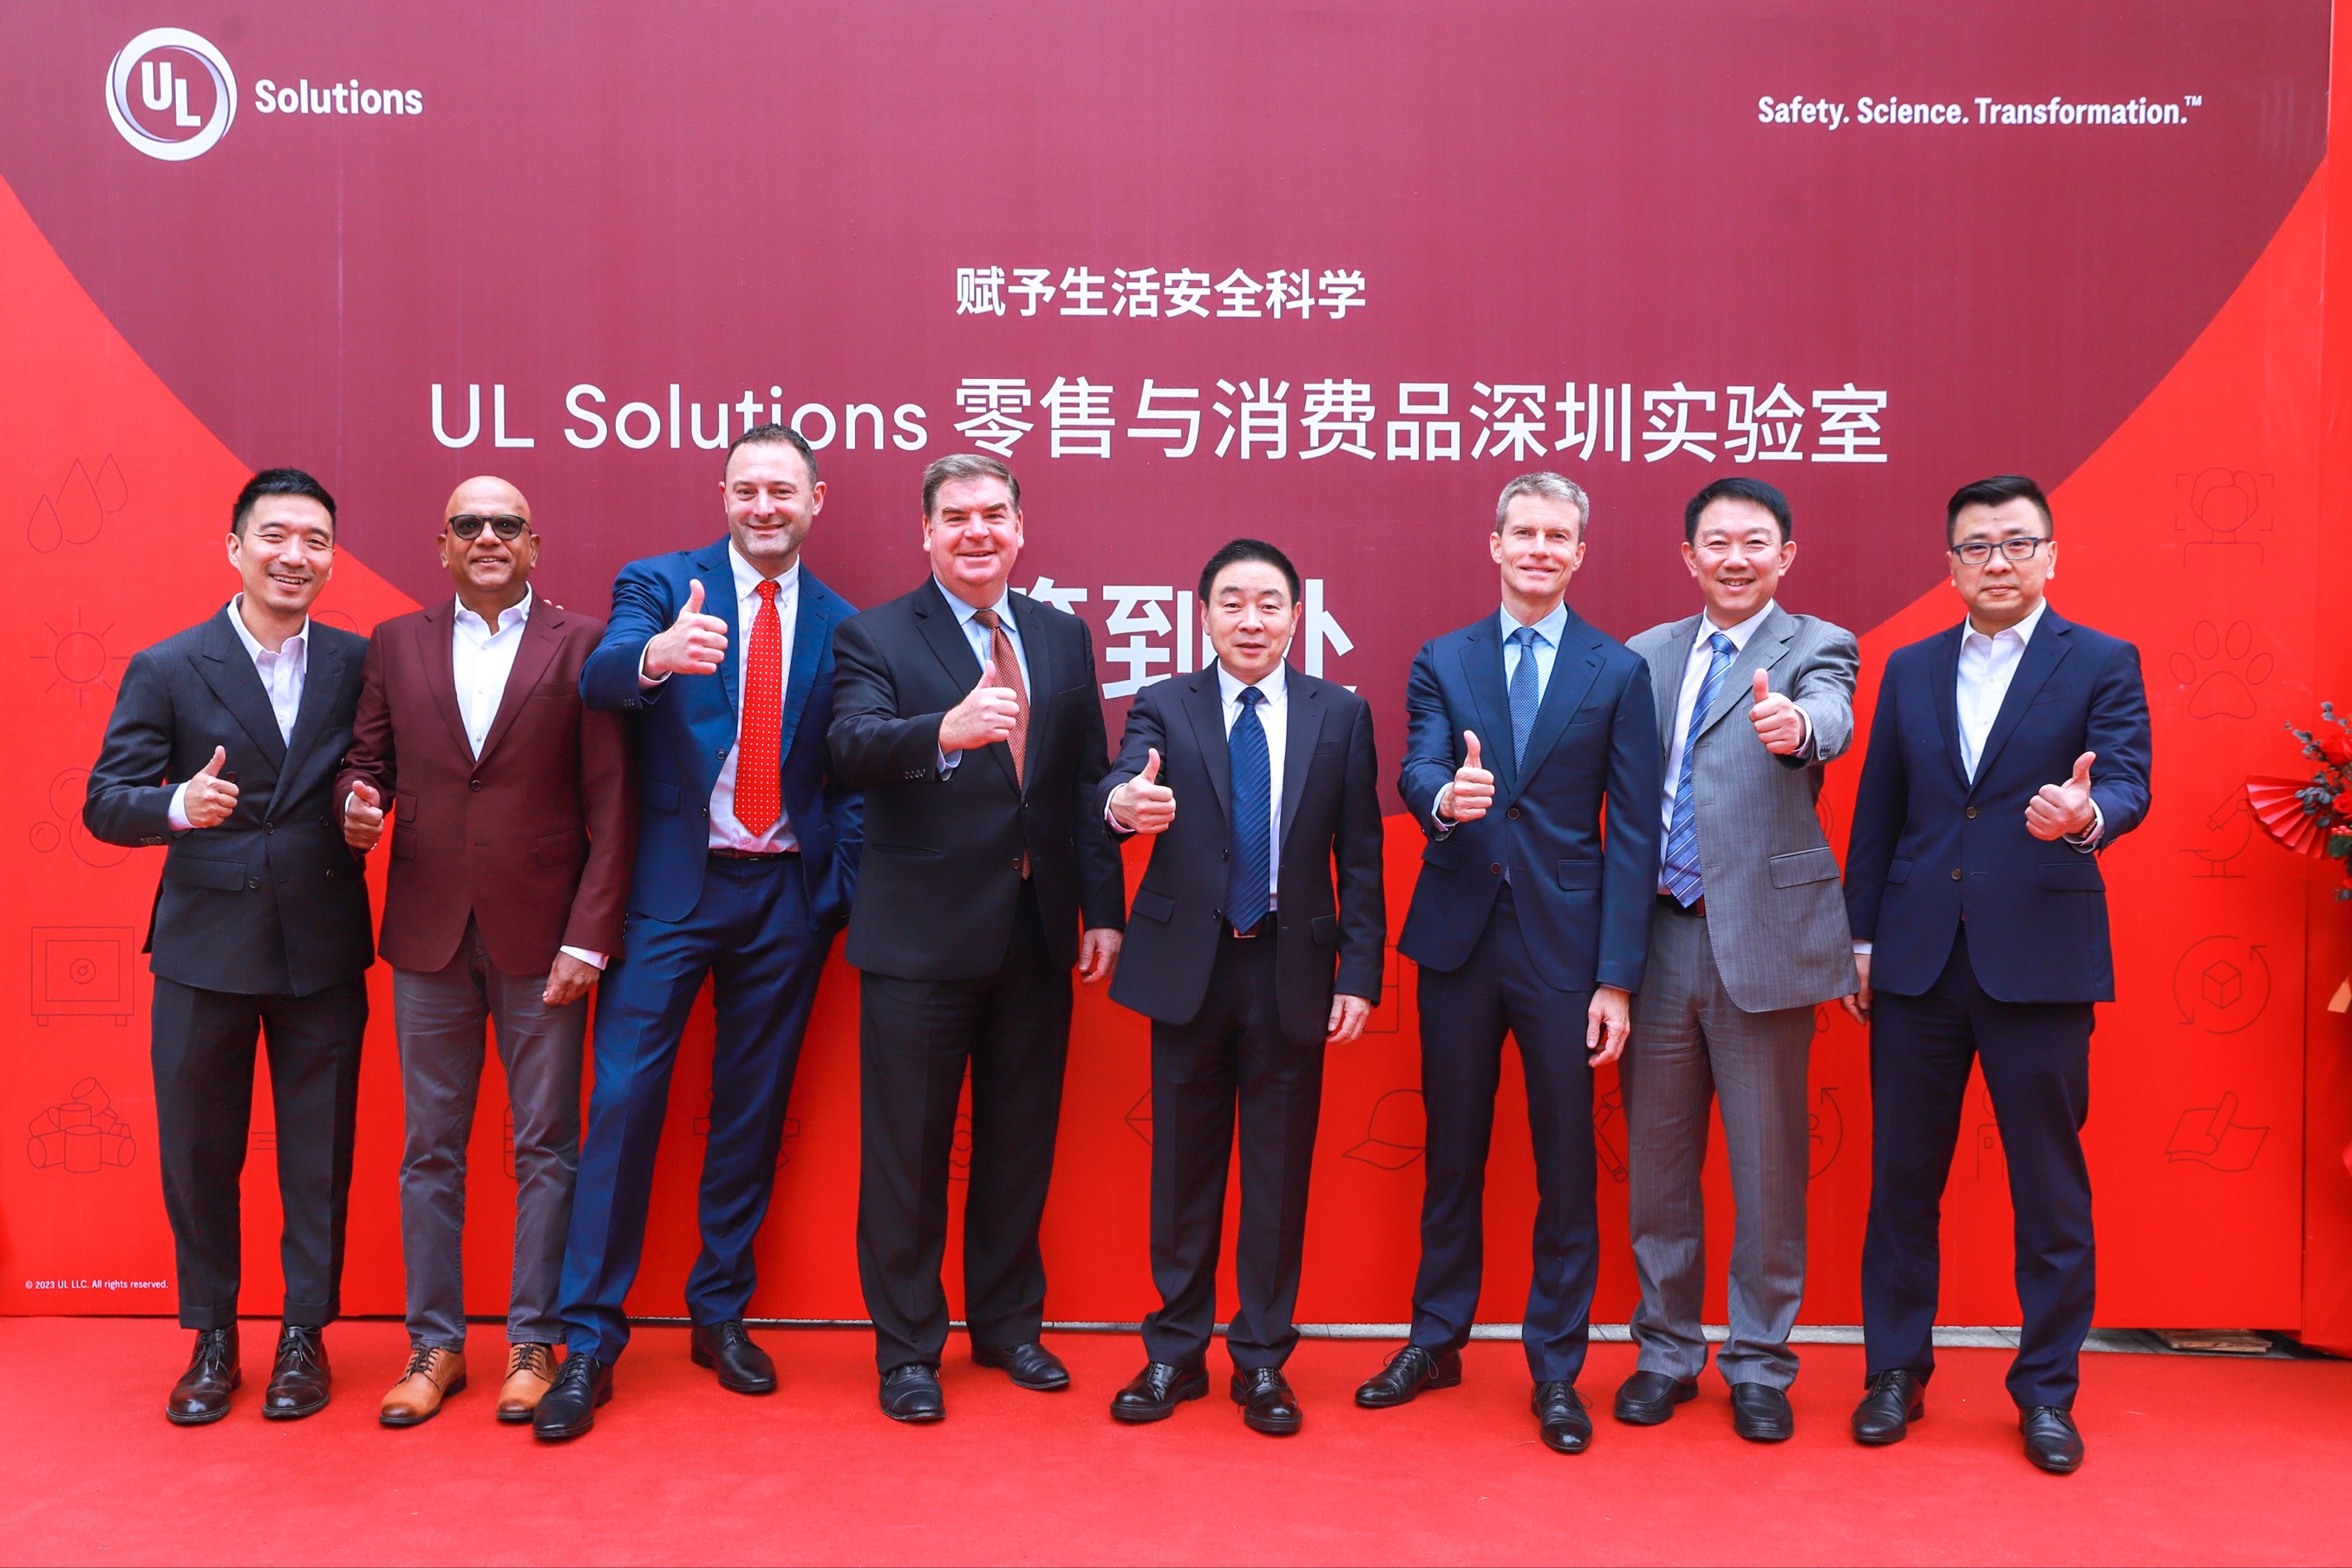 参加实验室开幕典礼的UL Solutions领导团队